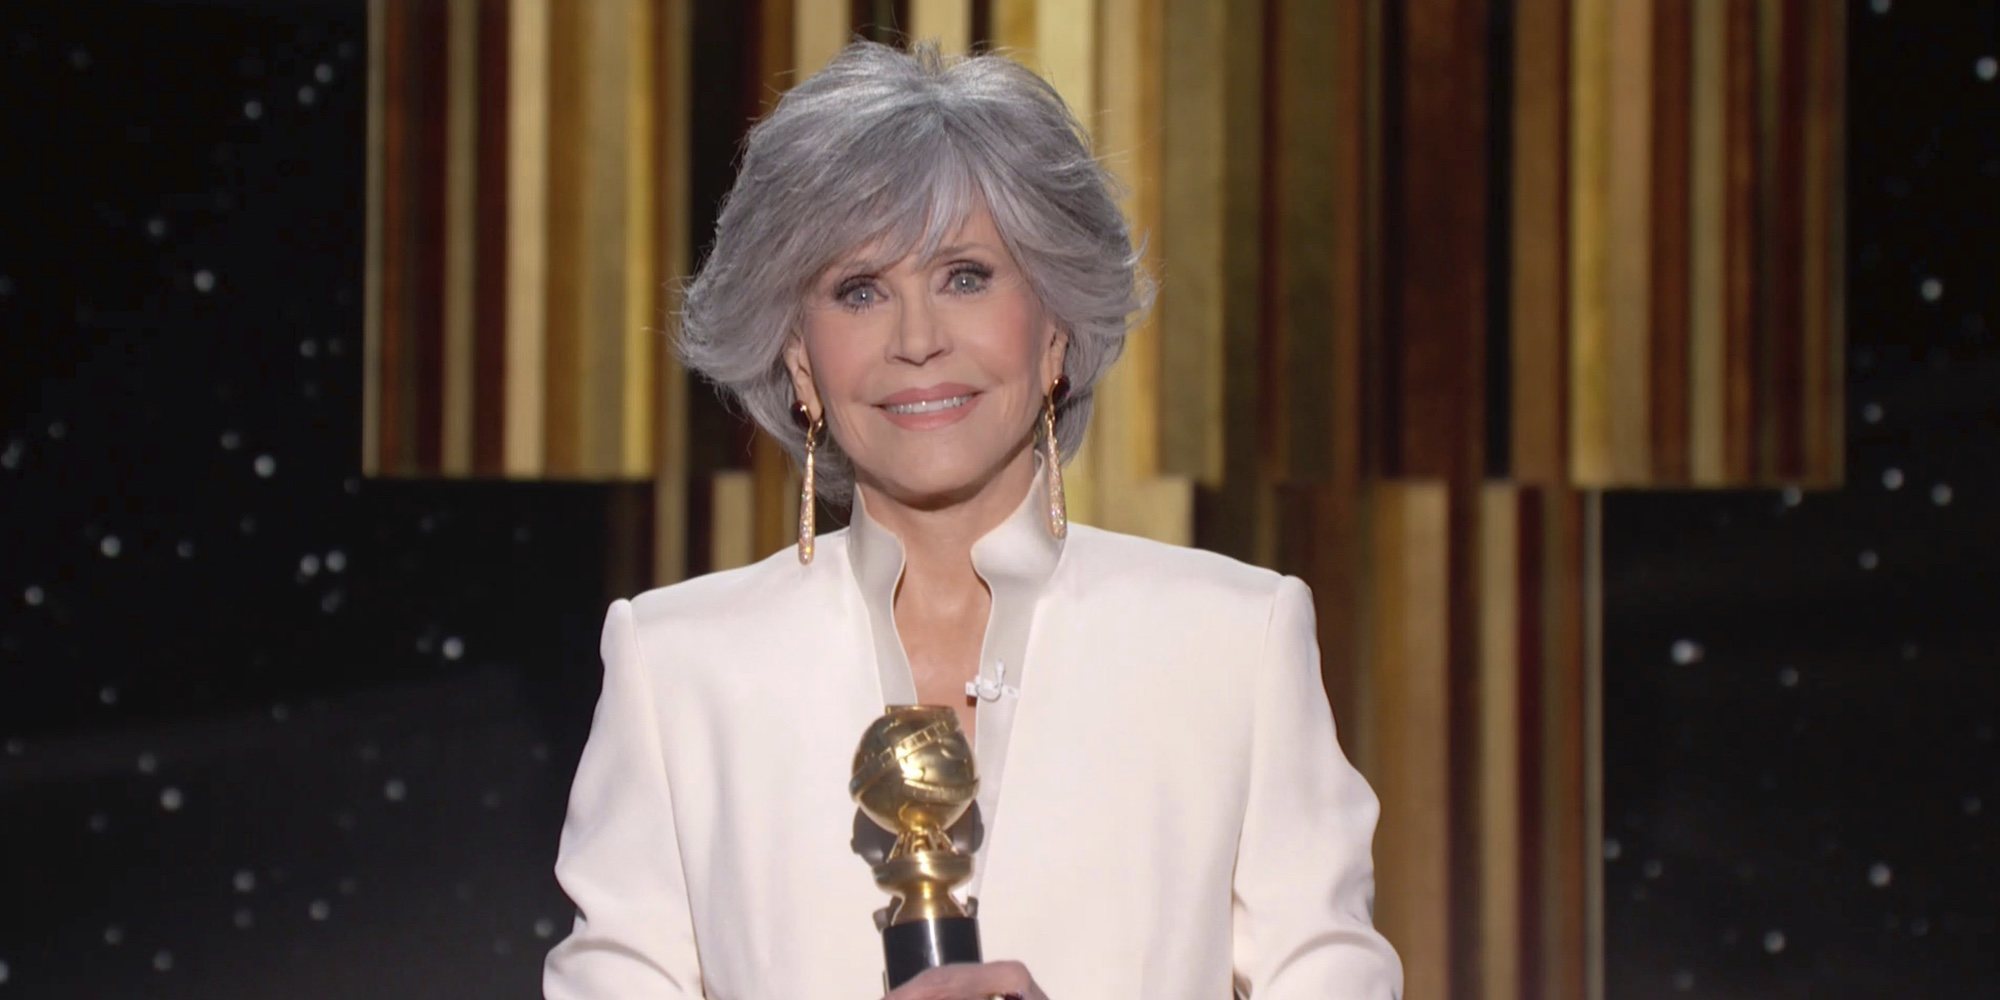 El contundente discurso de Jane Fonda en los Globos de Oro 2021: "Seamos líderes"